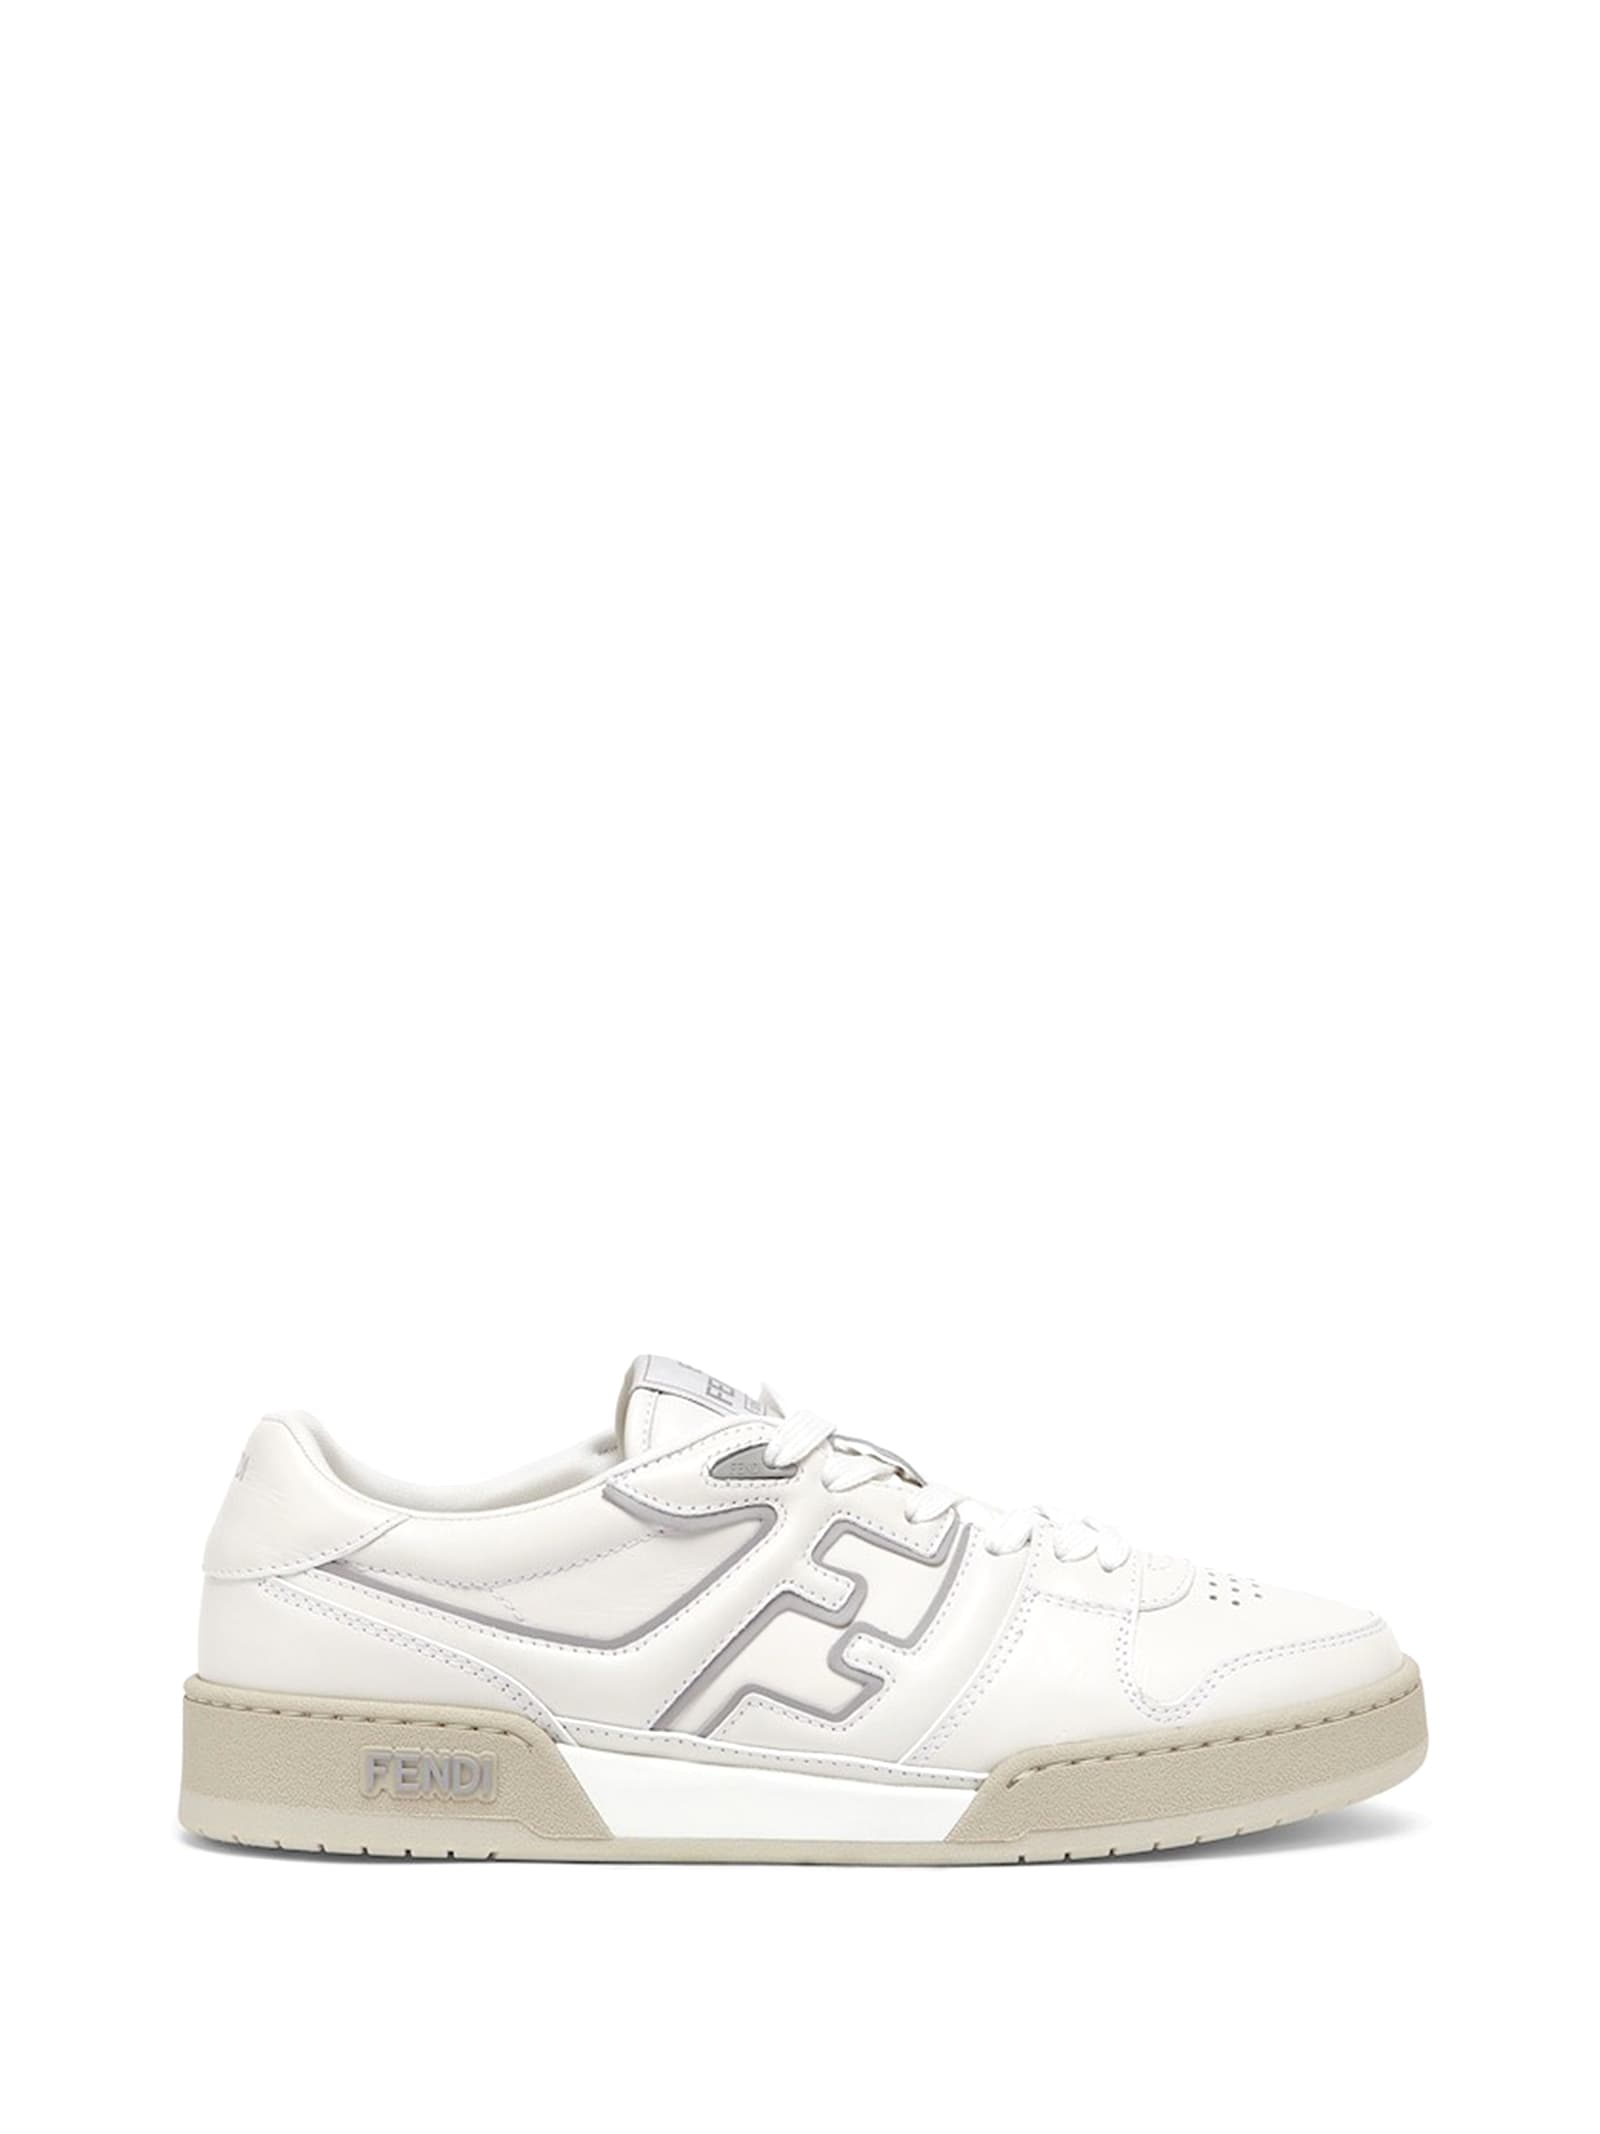 Fendi Low Top Sneaker In White Leather In Bianco Grgio Chiaro